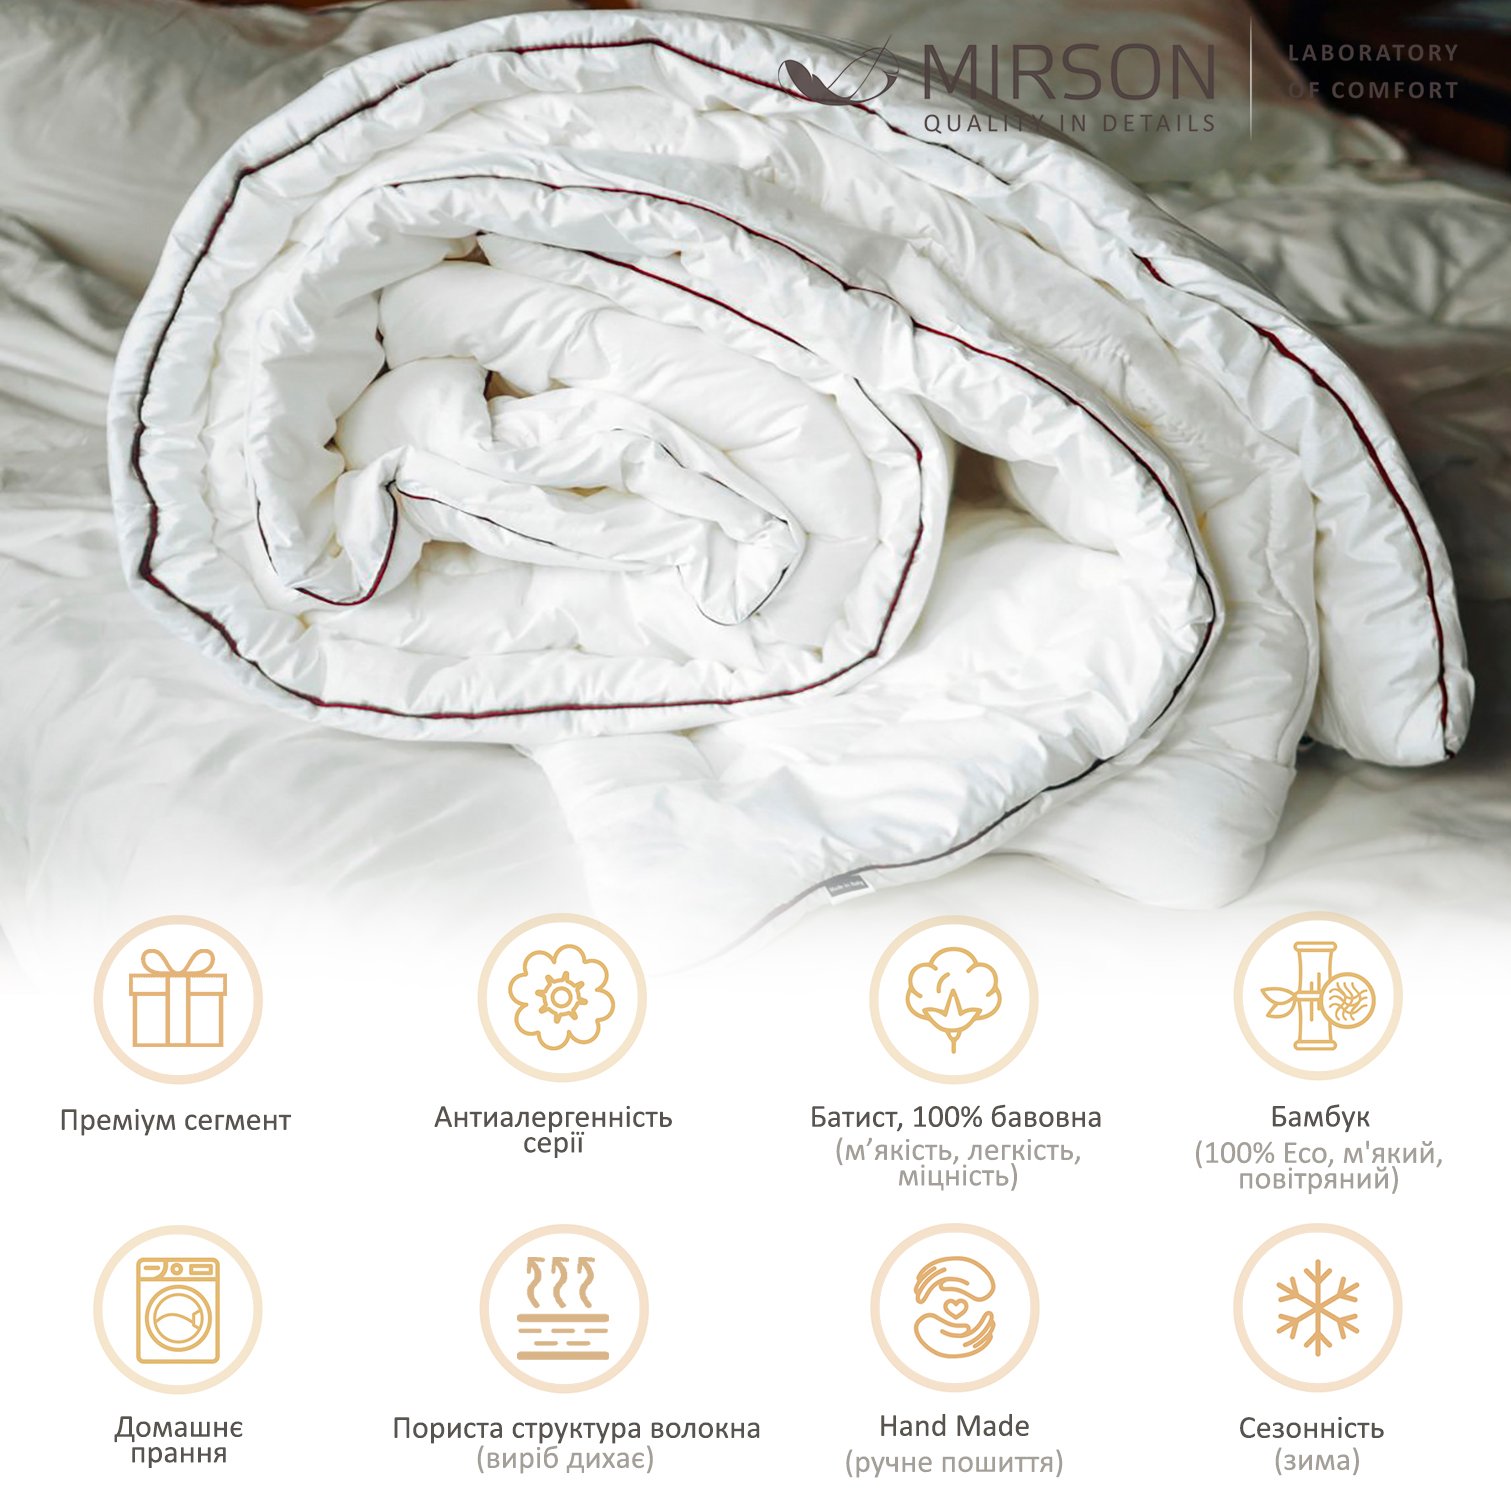 Одеяло бамбуковое MirSon Deluxe Hand Made №0446, зимнее, 220x240 см, белое - фото 5